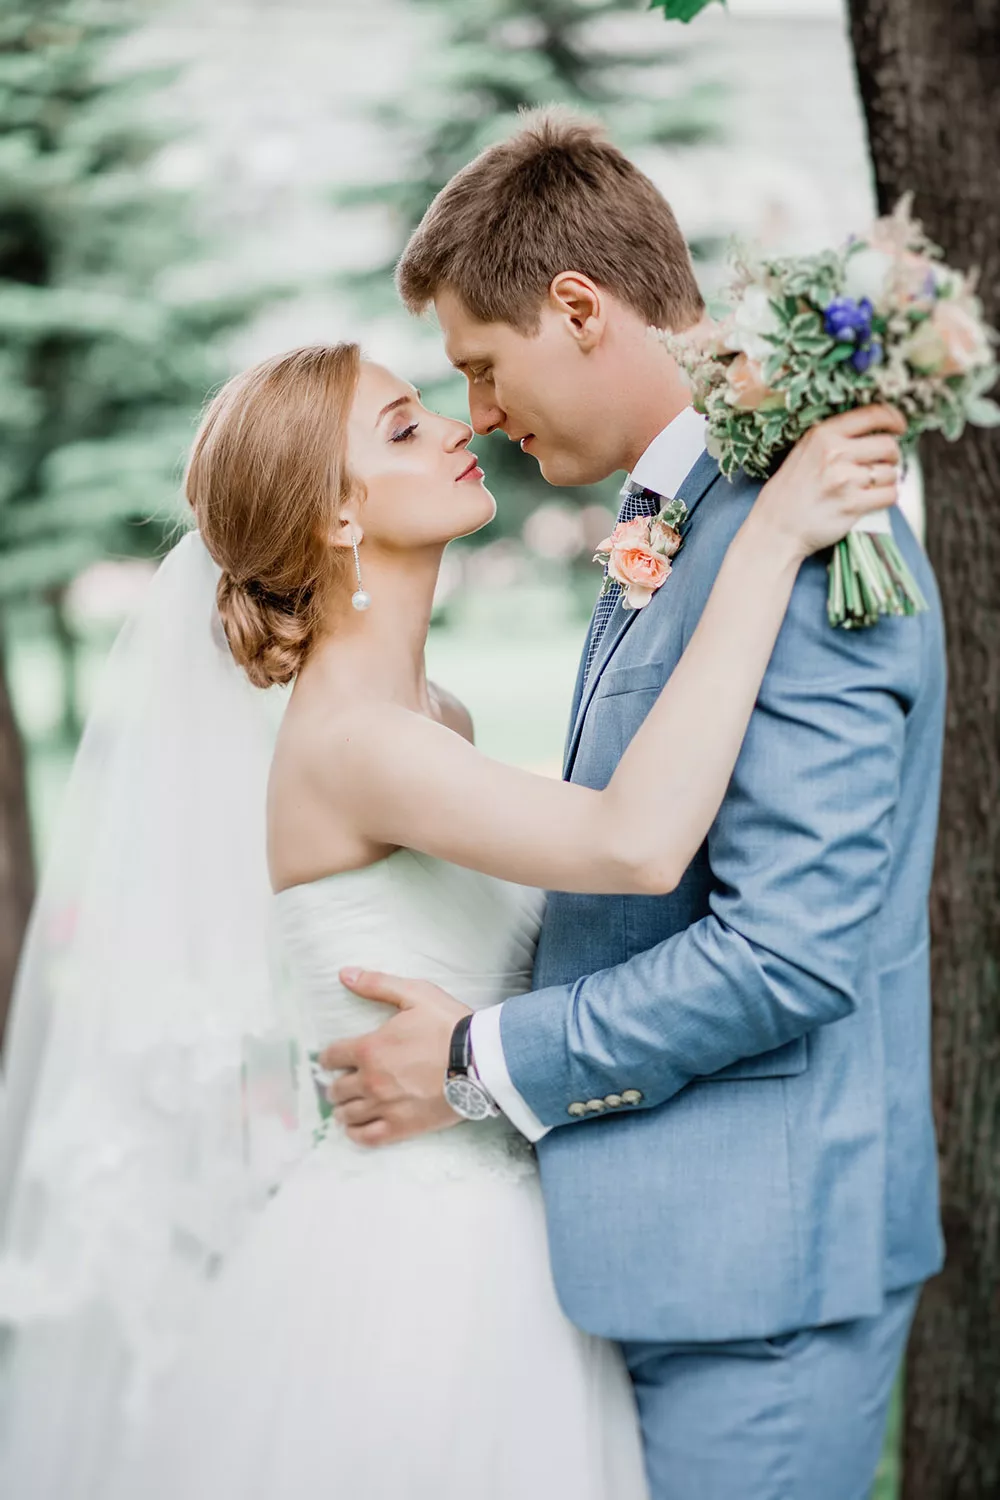 淺藍色有也是婚禮西裝的流行色系之一。